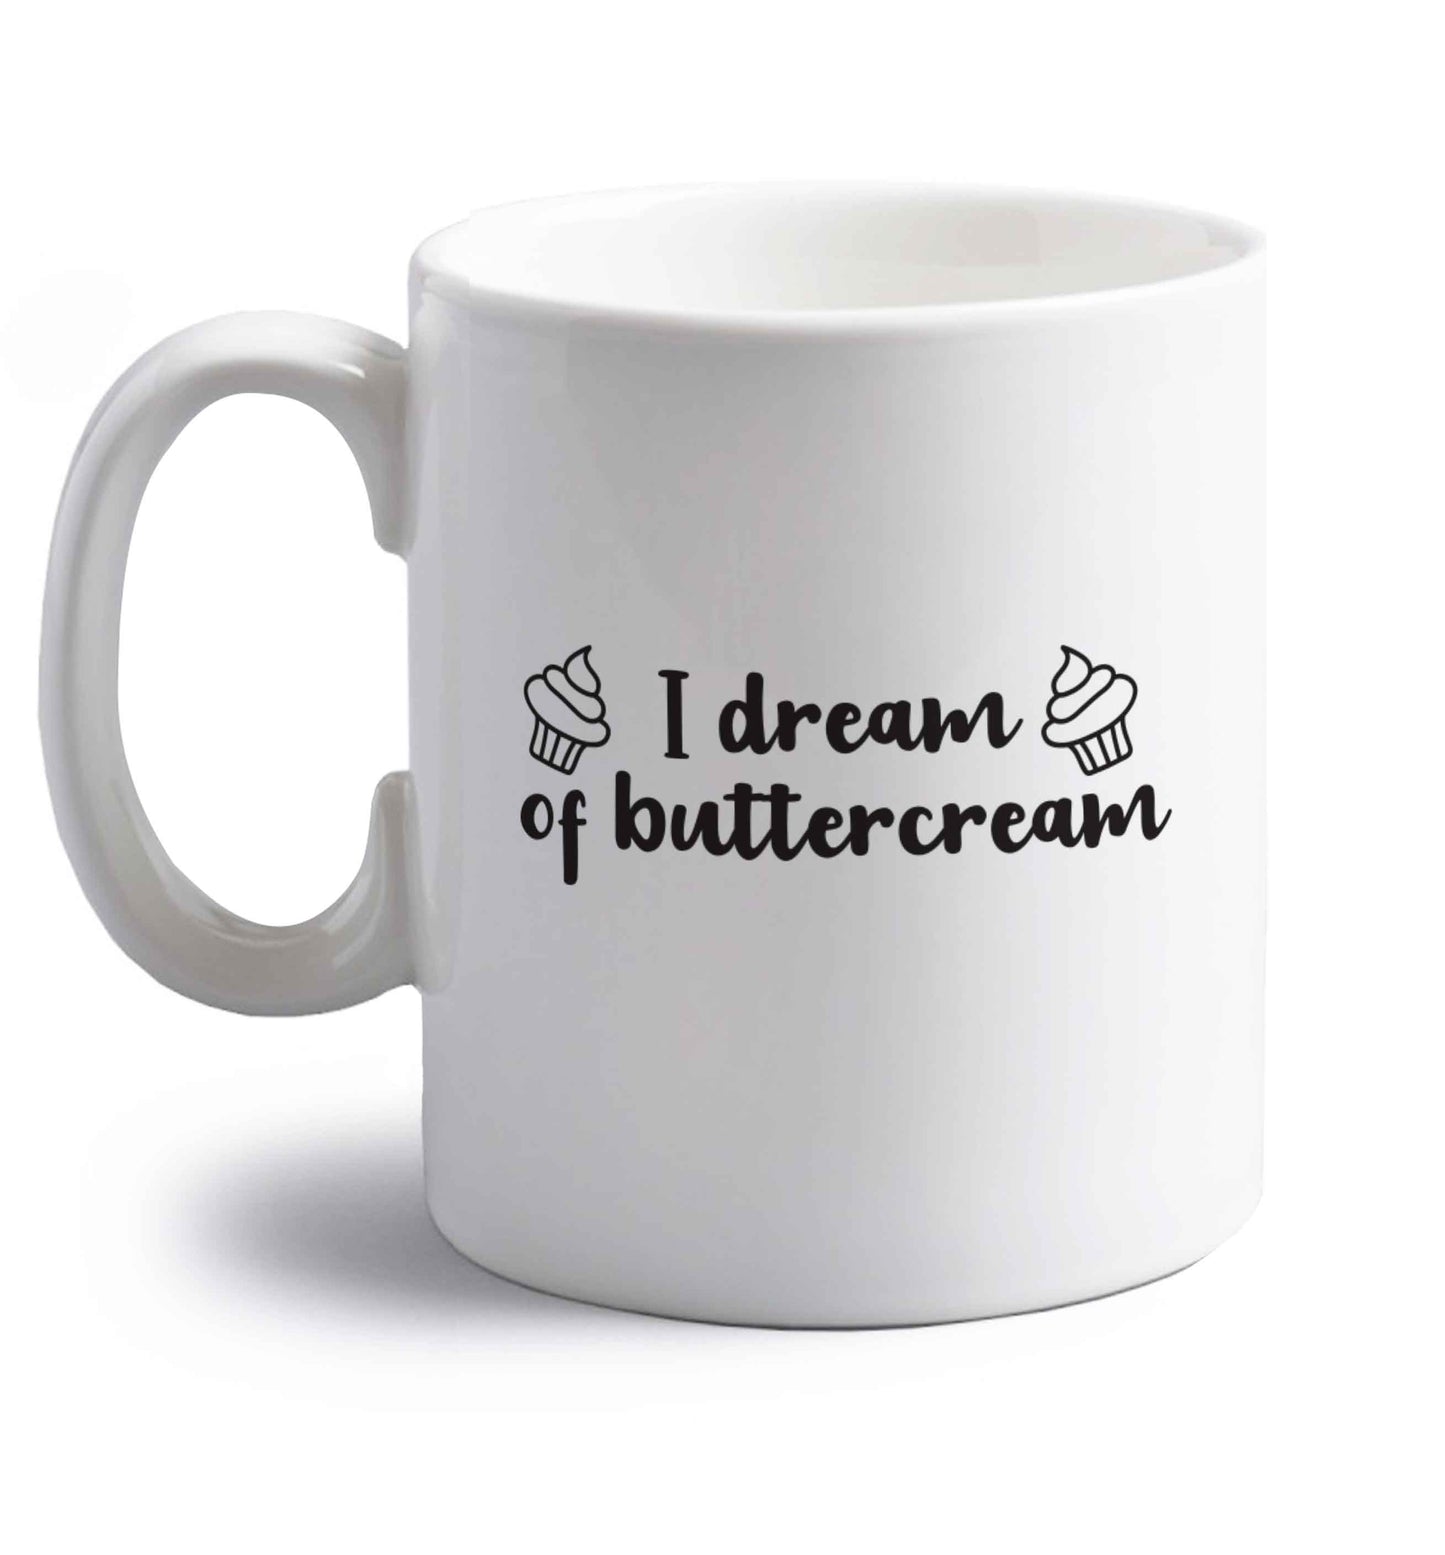 I dream of buttercream right handed white ceramic mug 